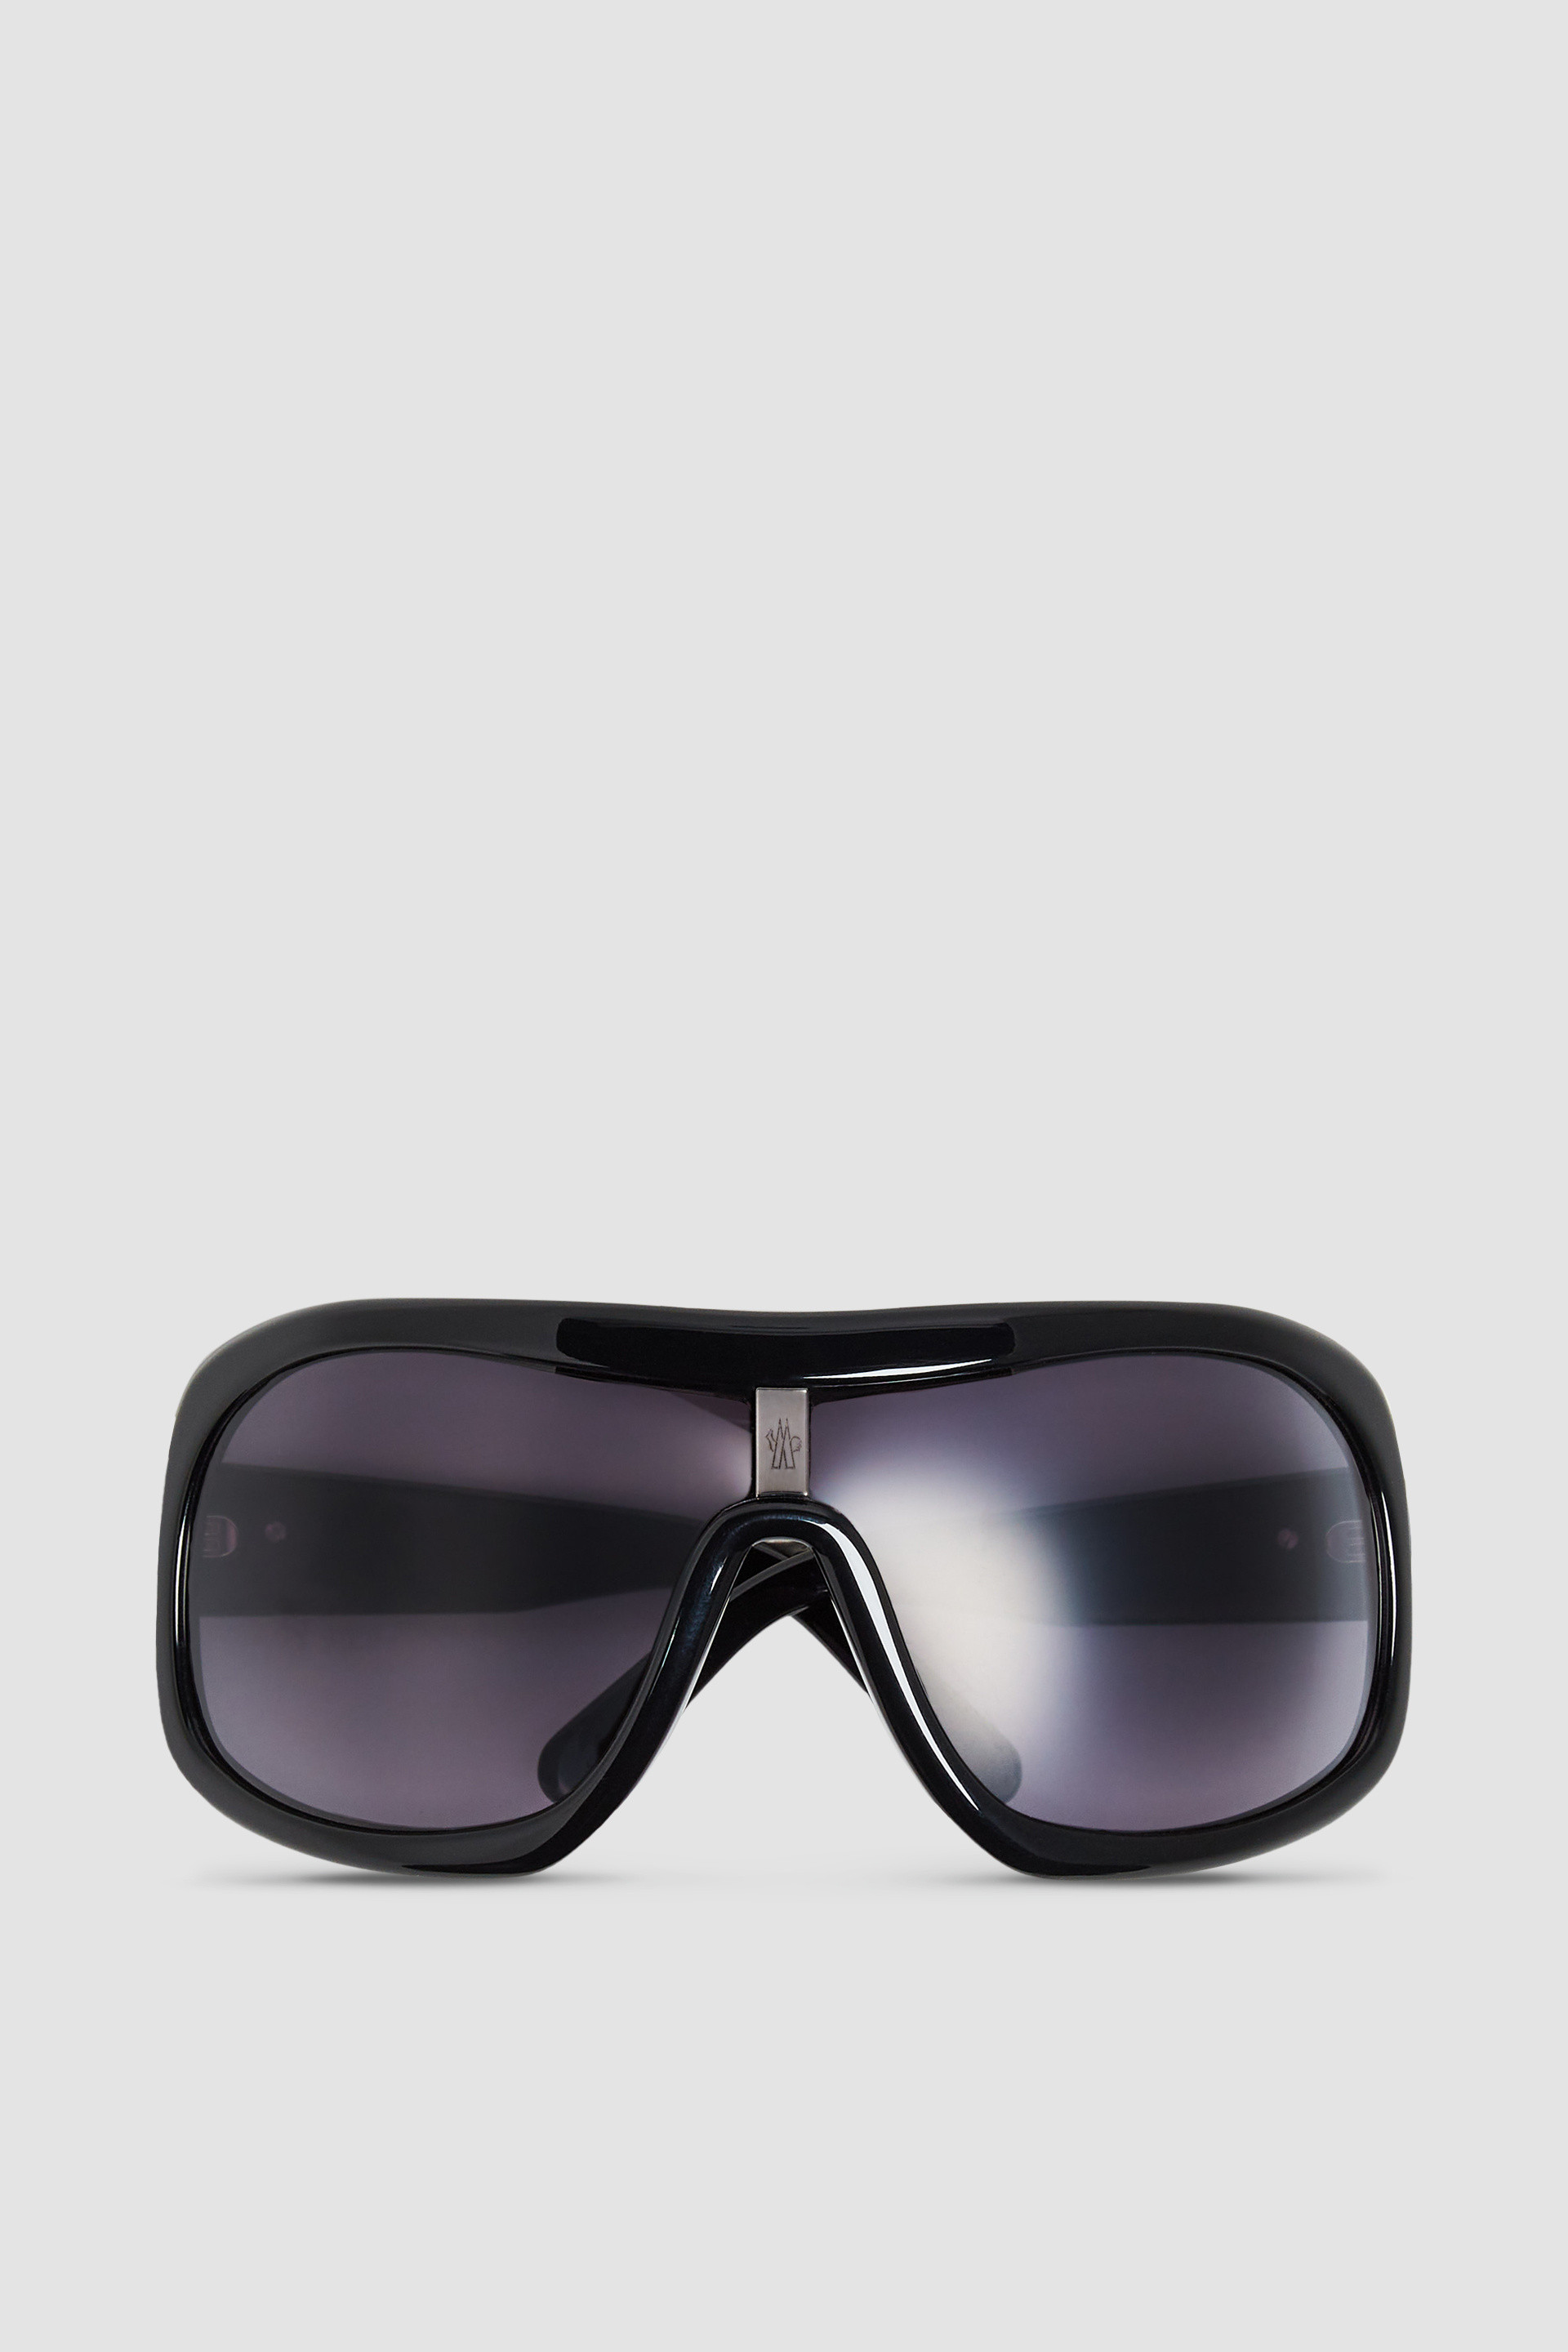 Franconia Shield Sonnenbrille Glänzend Schwarz - Sonnenbrillen für